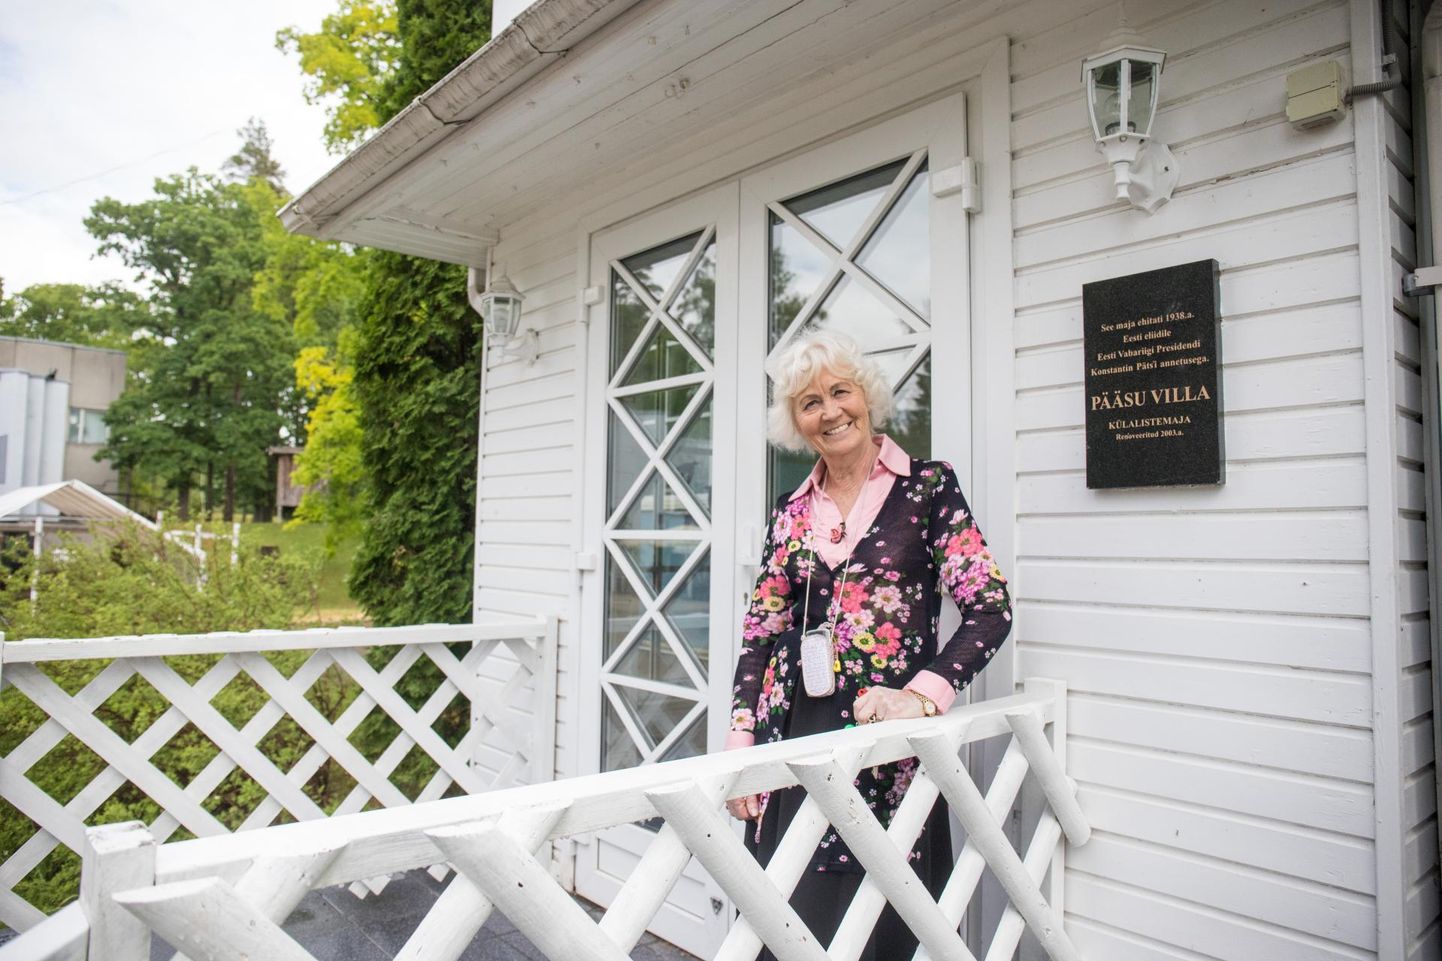 Nelijärve puhkekeskuse juht Reet Purre tutvustamas Pääsu Villat. Selles hoones avas Eesti vabariigi esimene president Konstantin Päts 1938. aastal turistide kodu.